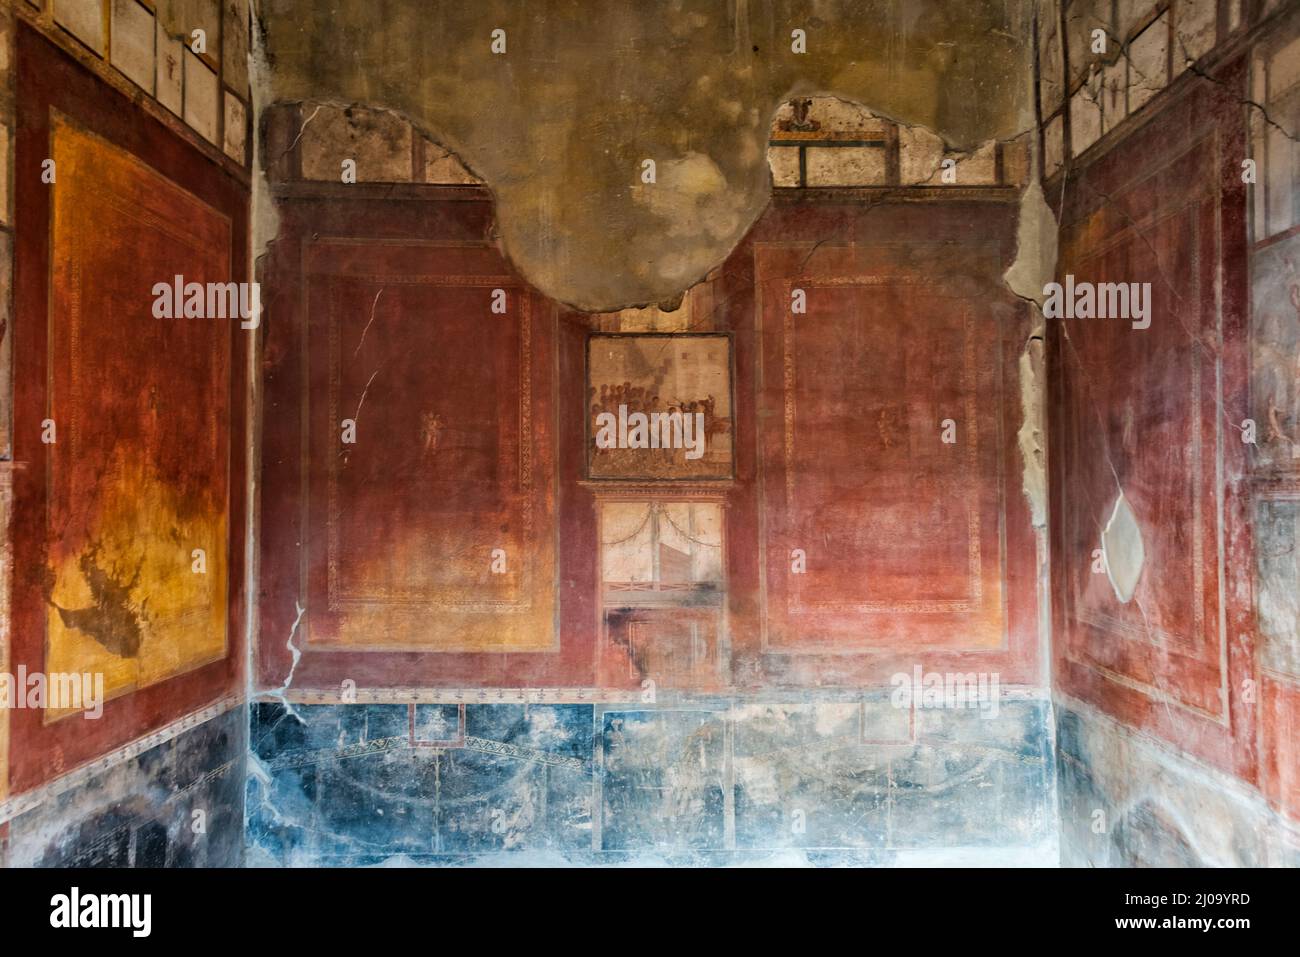 Ruinas de Pompeya, mural en el baño, Patrimonio de la Humanidad de la UNESCO, provincia de Nápoles, región de Campania, Italia Foto de stock